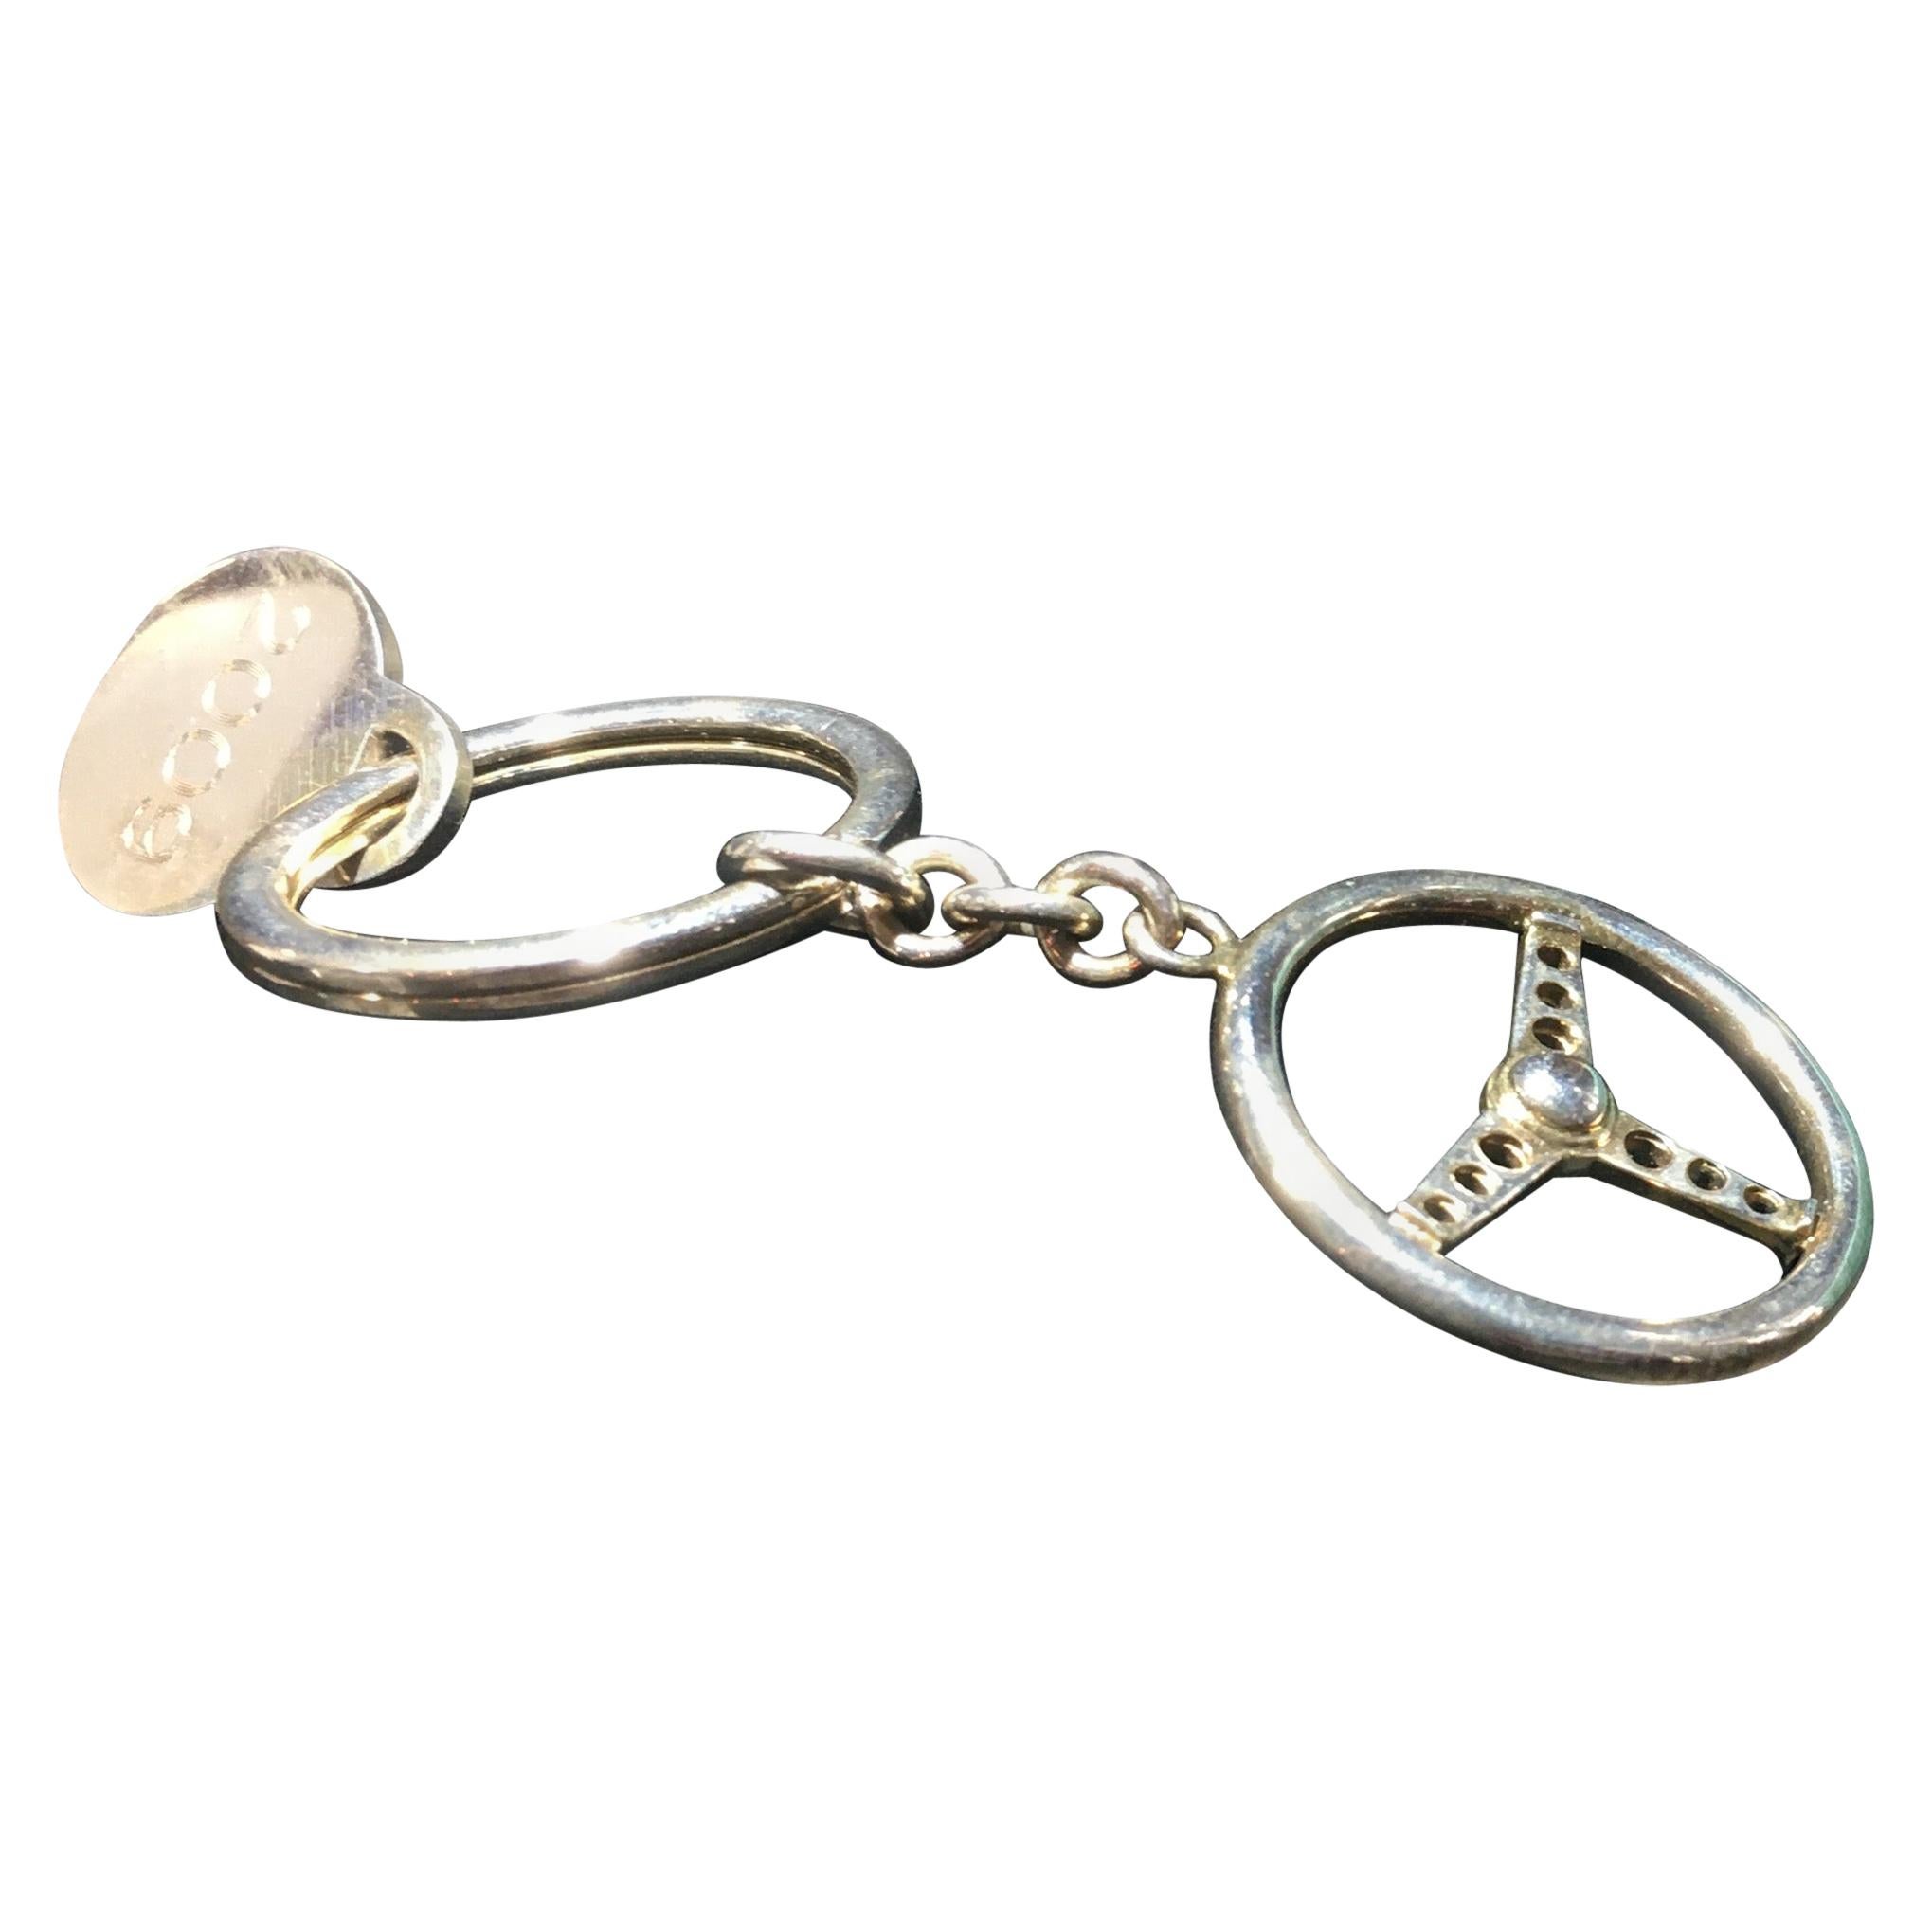 Porte-clés Tiffany en argent sterling, roue à gradins.  Boîte Tiffany.  Deux disponibles.